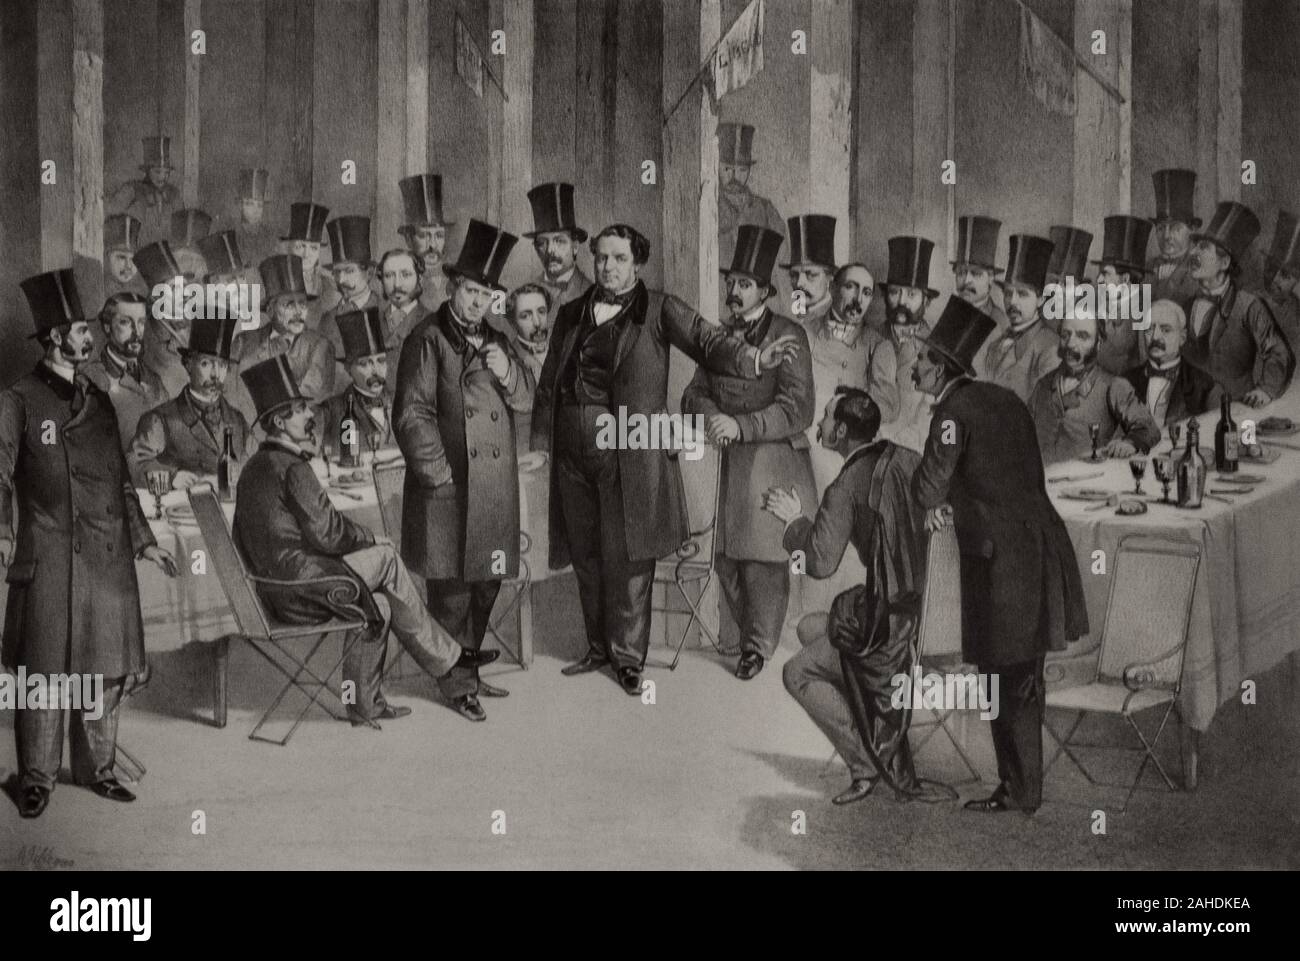 Und Veranstaltungsräume durch die Progressiven am 20. Dezember 1863 statt. Lithographie, von Jose Villegas (1840-1865), Ca. 1863. Museum der Romantik. Madrid. Spanien. Stockfoto